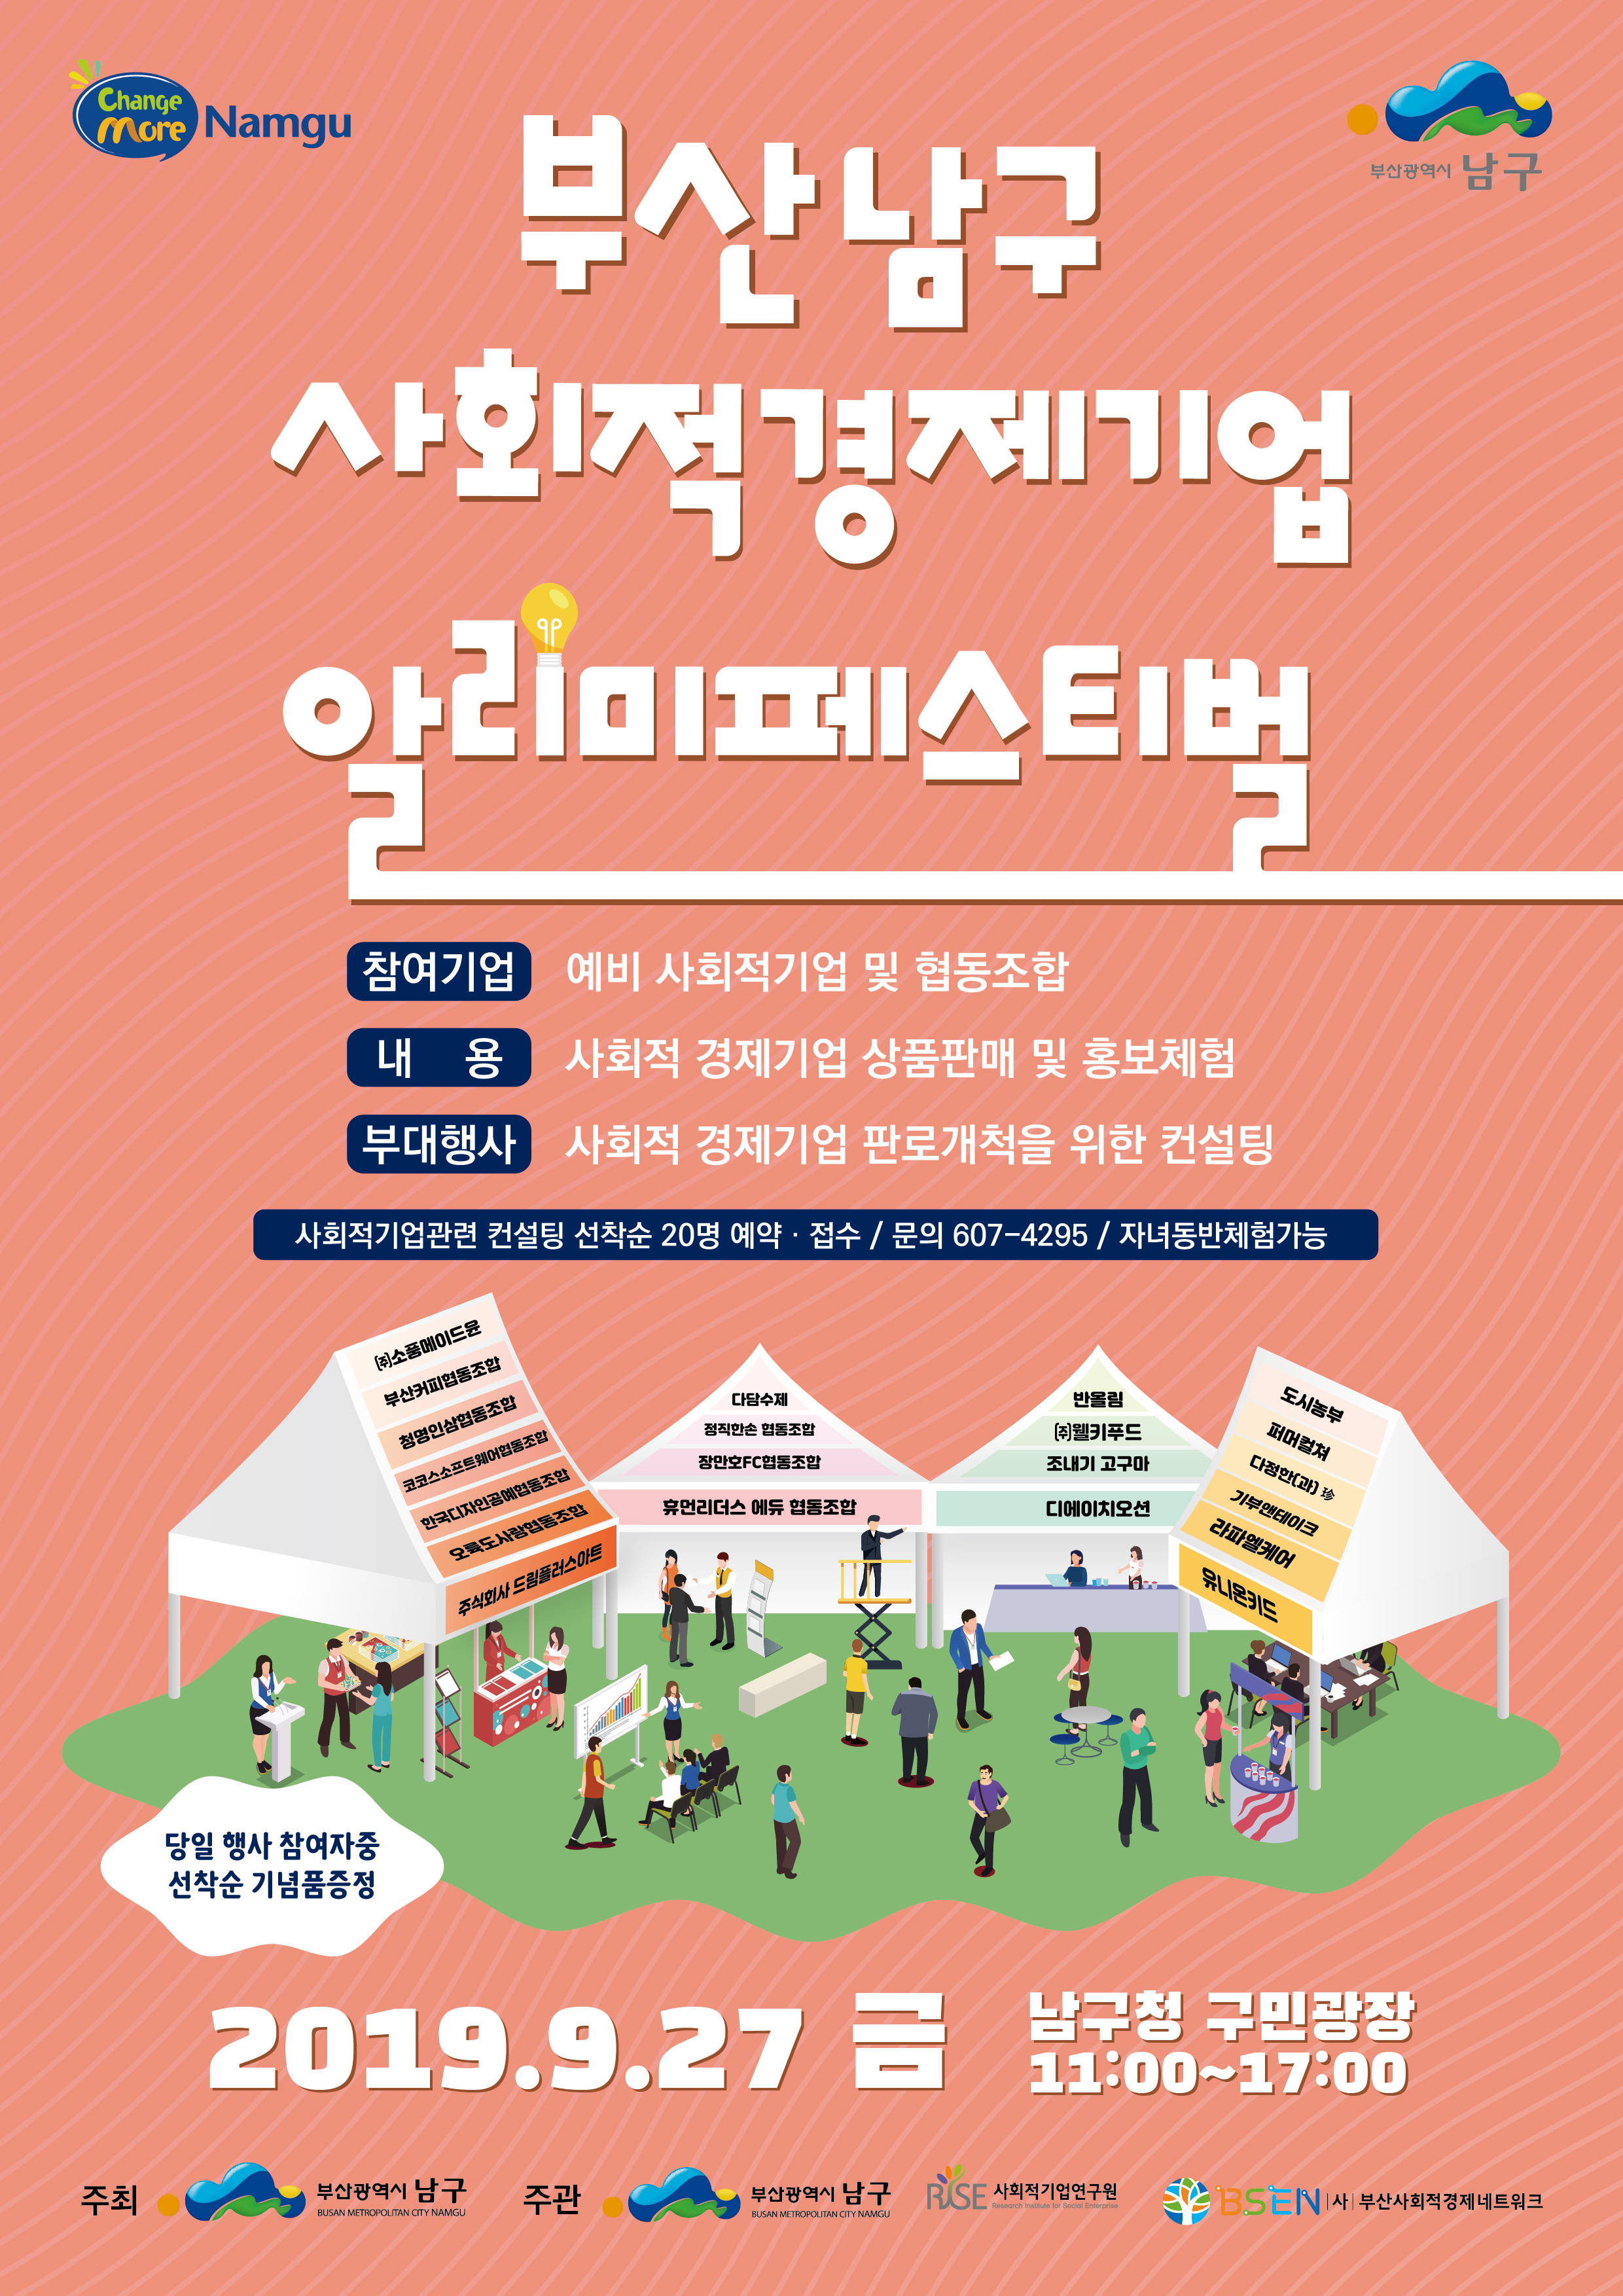 2019년 남구 사회적경제기업 알리미 페스티벌 개최 알림